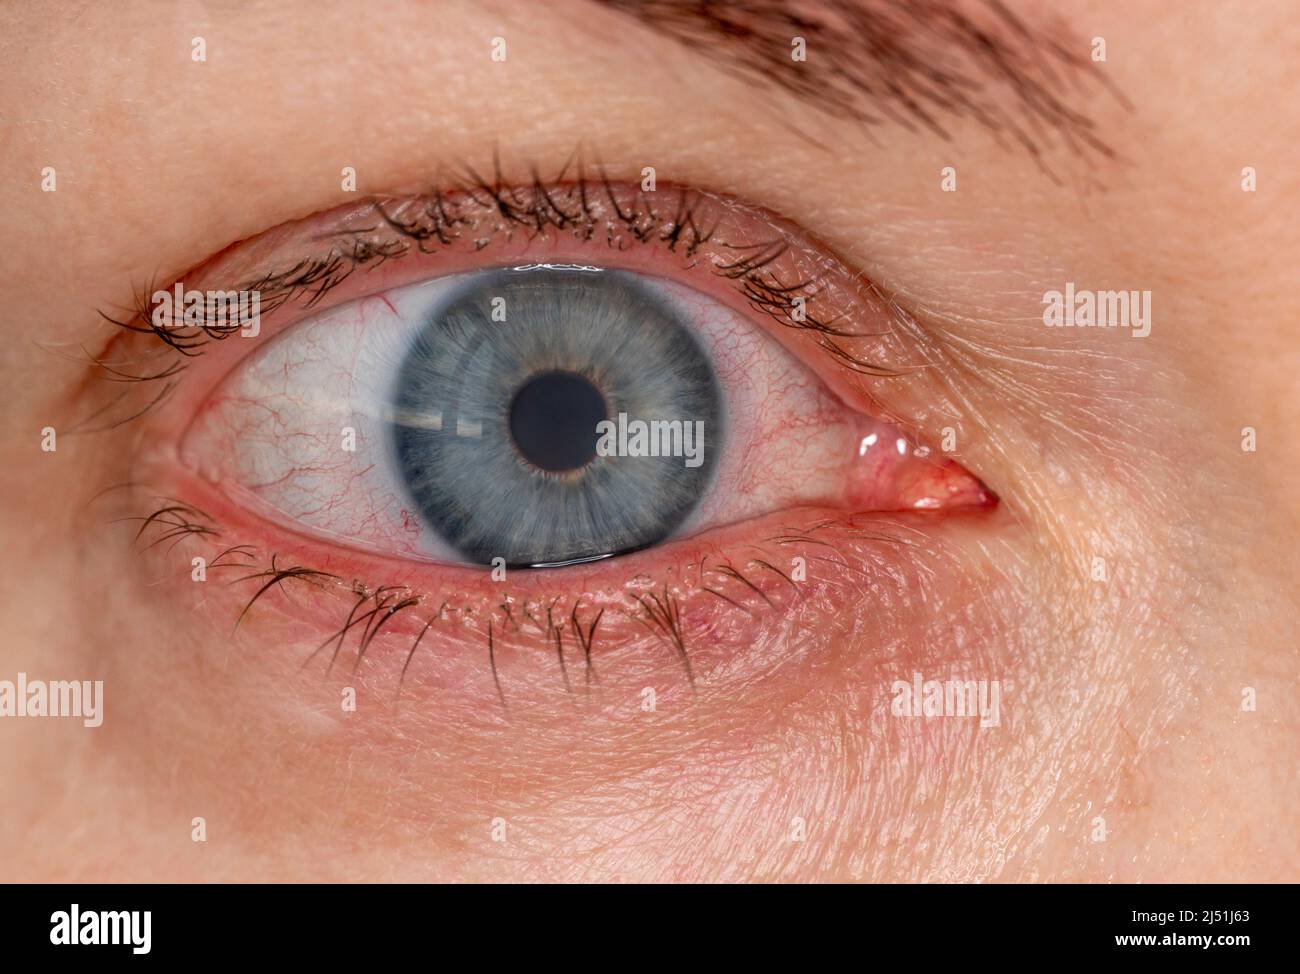 occhio infiammato rosso con lente a contatto, macrofotografia close-up. Dilatazione dei vasi sanguigni dell'occhio, sforzo dal calcolatore. Trattamento dell'occhio secco e irritato Foto Stock